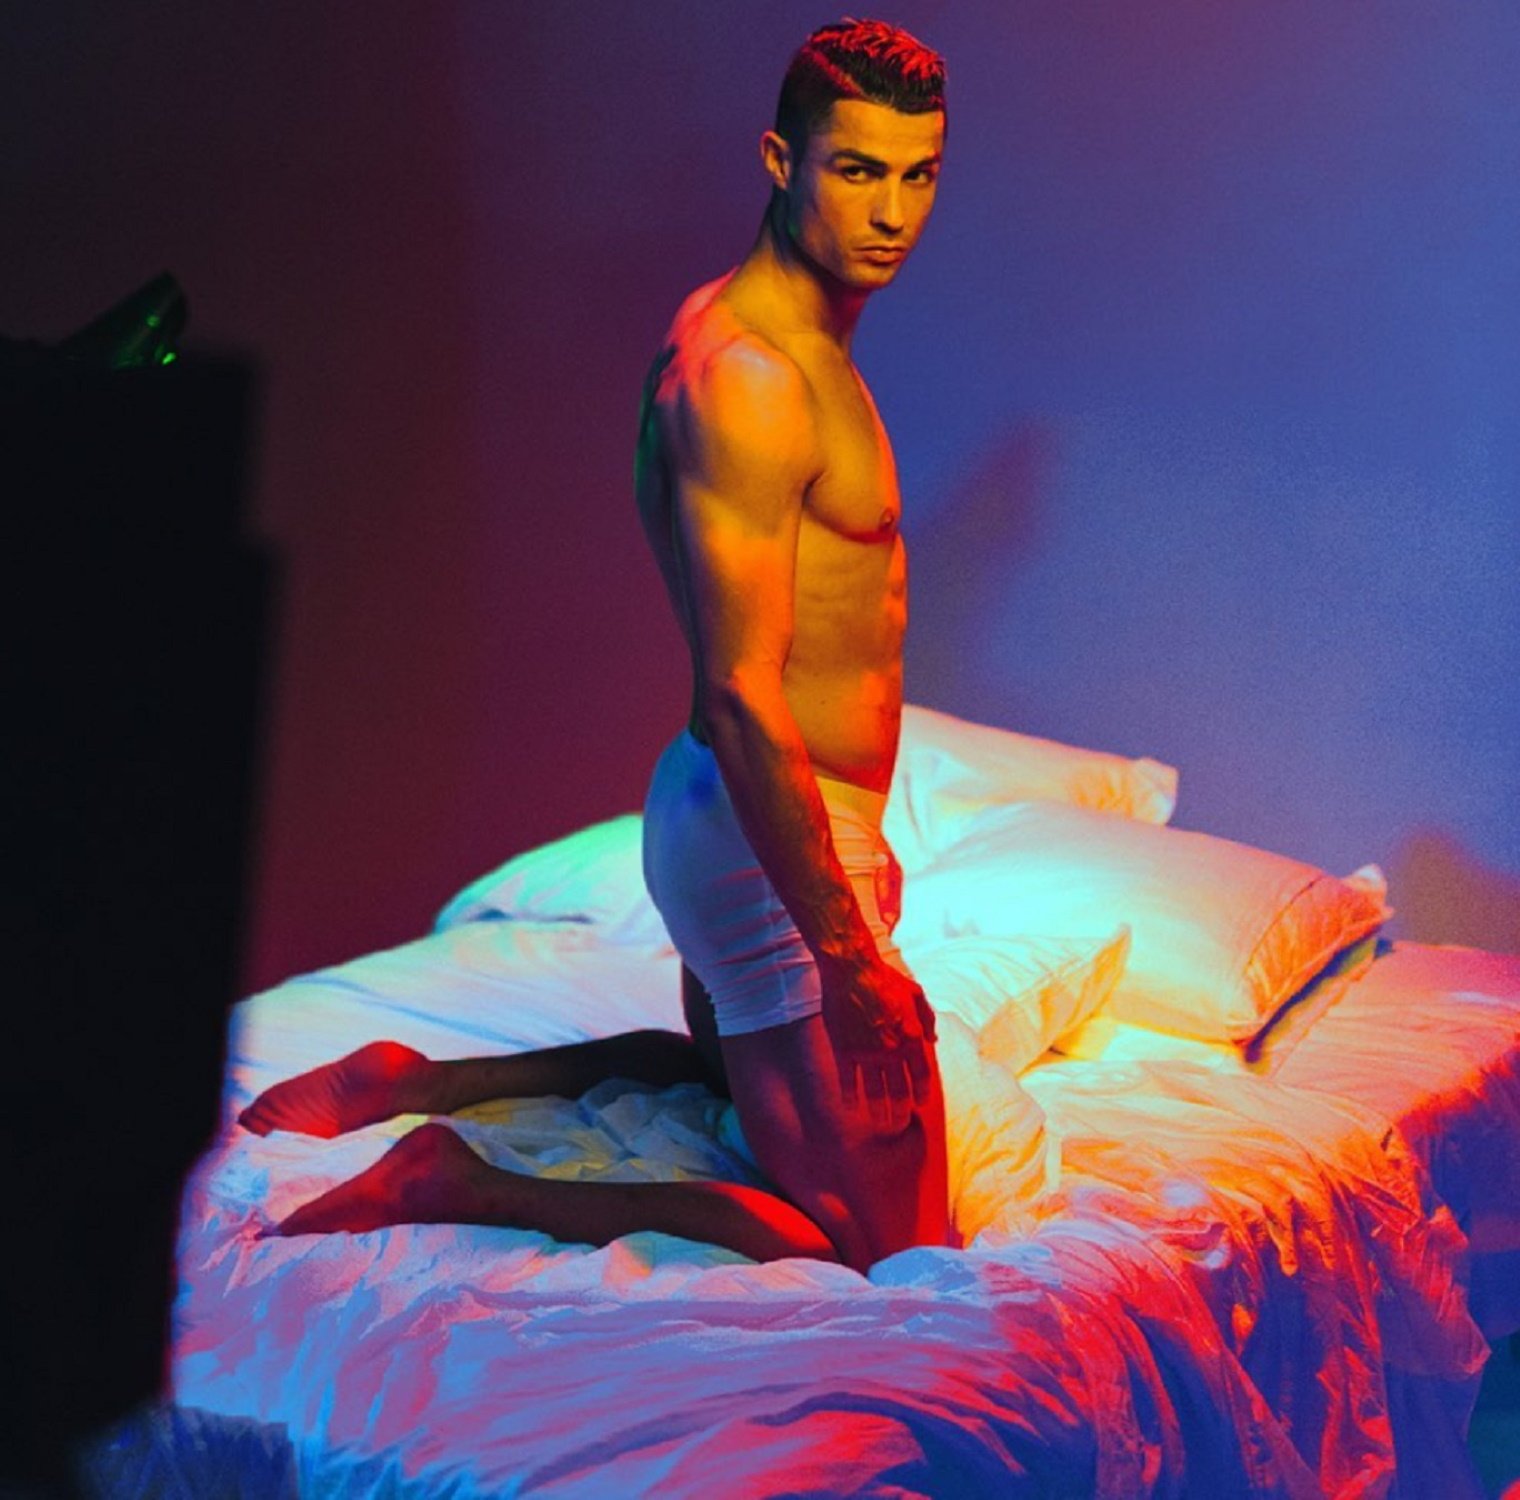 ¿Cristiano Ronaldo en una web porno? El portugués, objeto de deseo